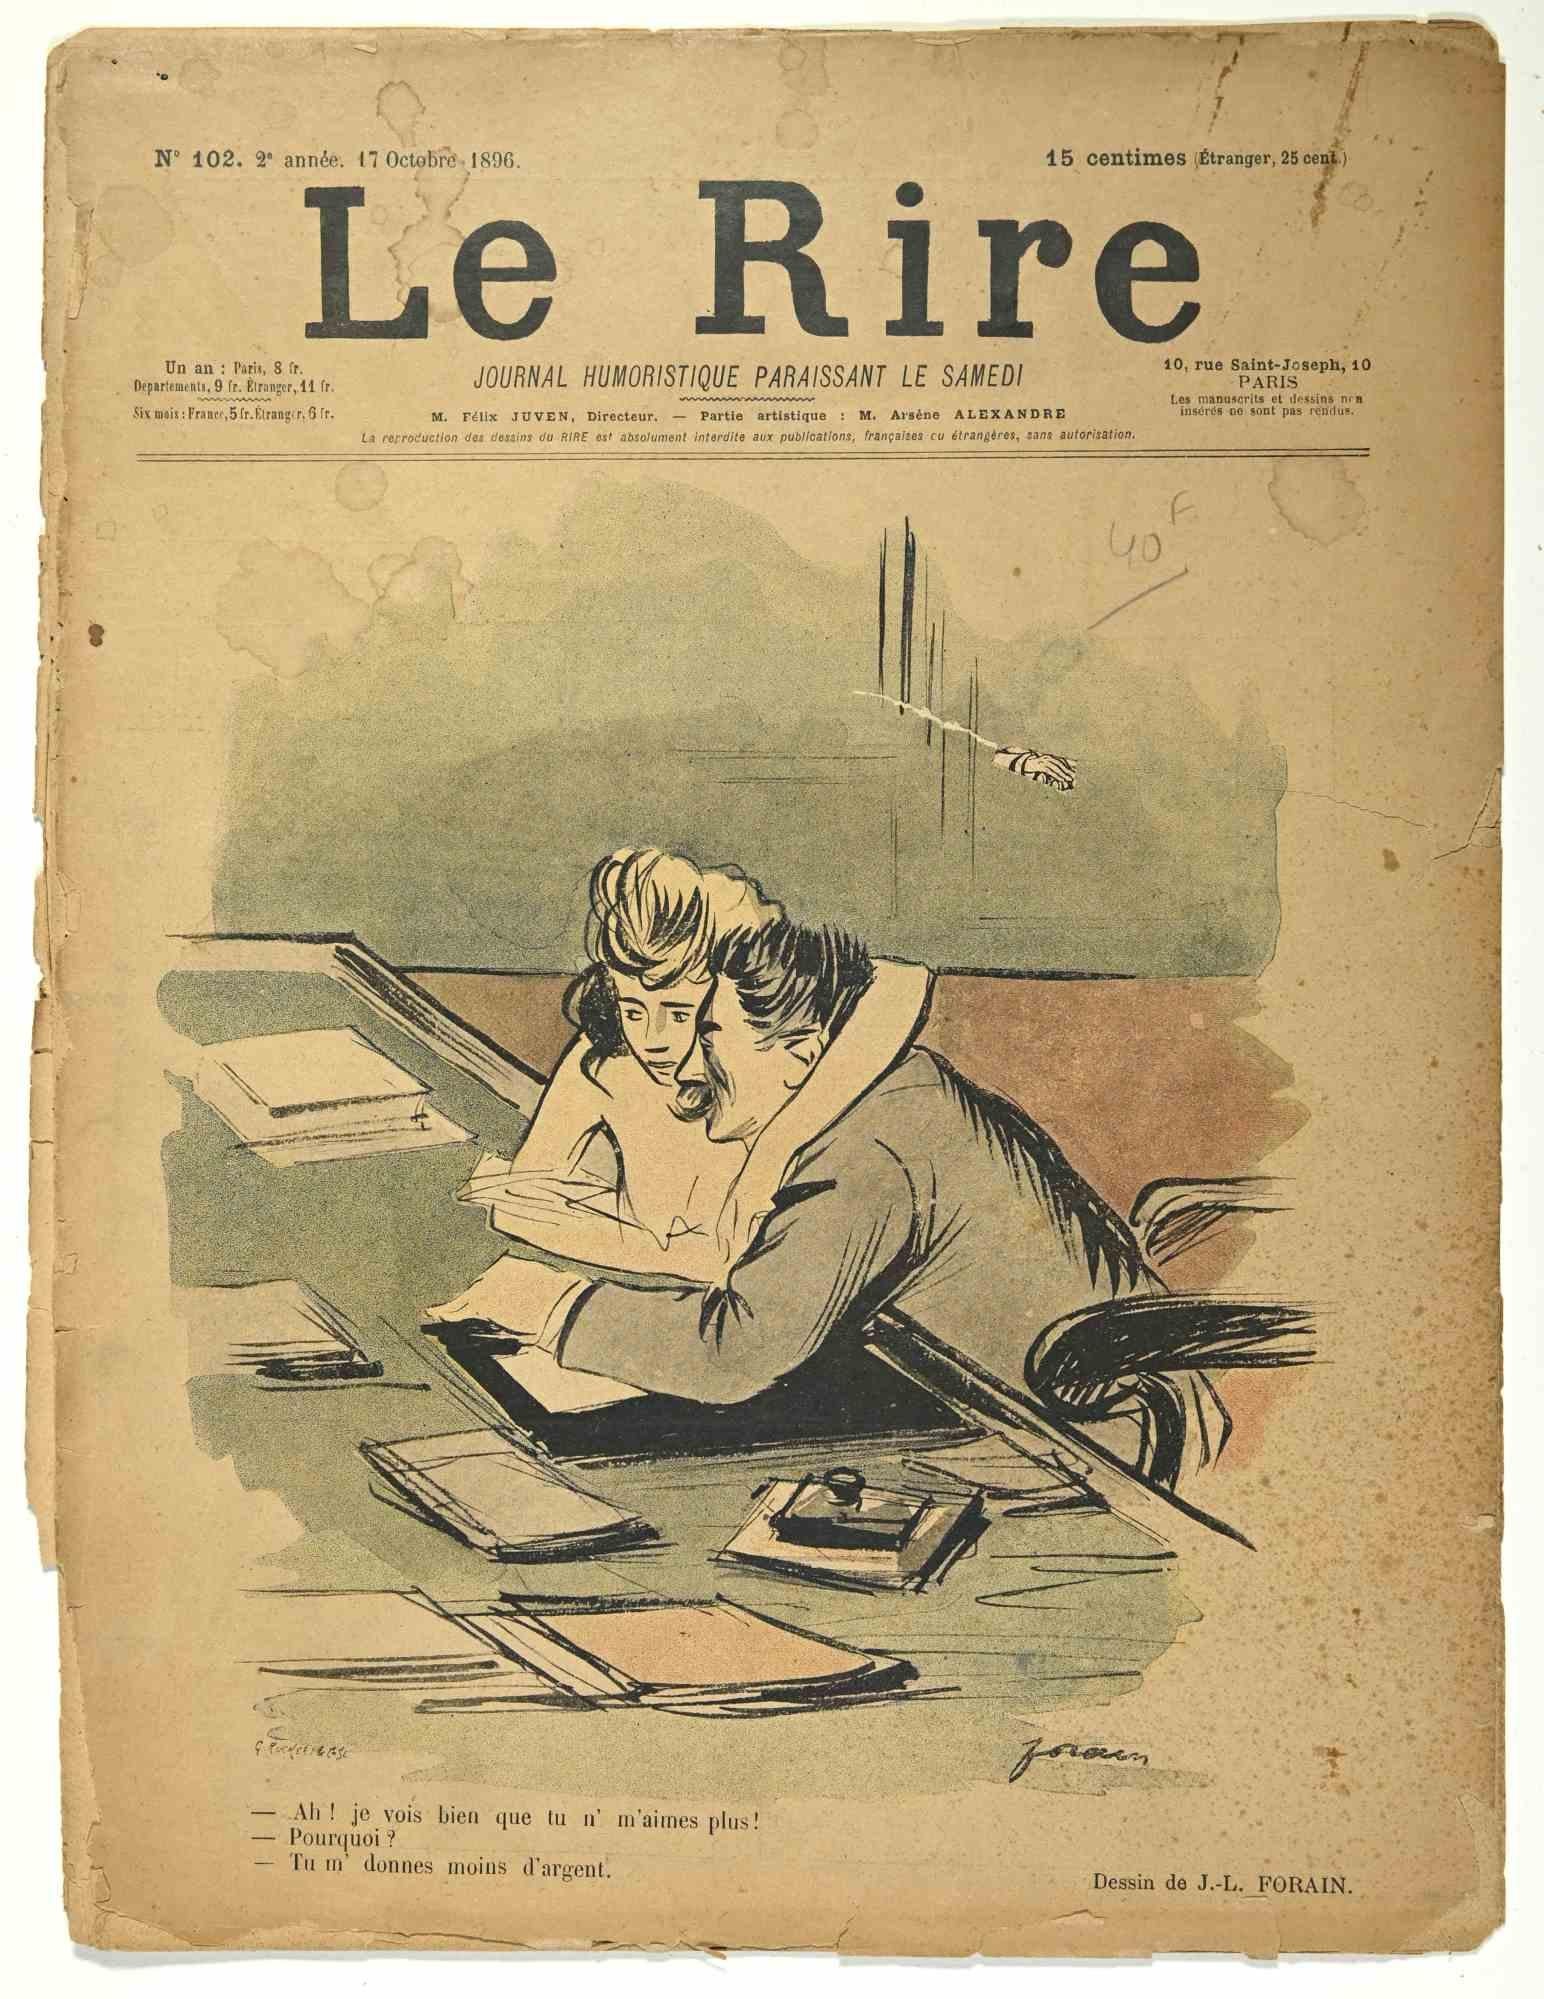 Le Rire est un magazine humoristique publié en octobre 1896, reproduisant des dessins de Jean Luis Forain (1852-1931).

Bon état sur un papier jauni, à l'exception d'un peu de papier déchiré dans la marge gauche.

Tampon signé dans le coin inférieur